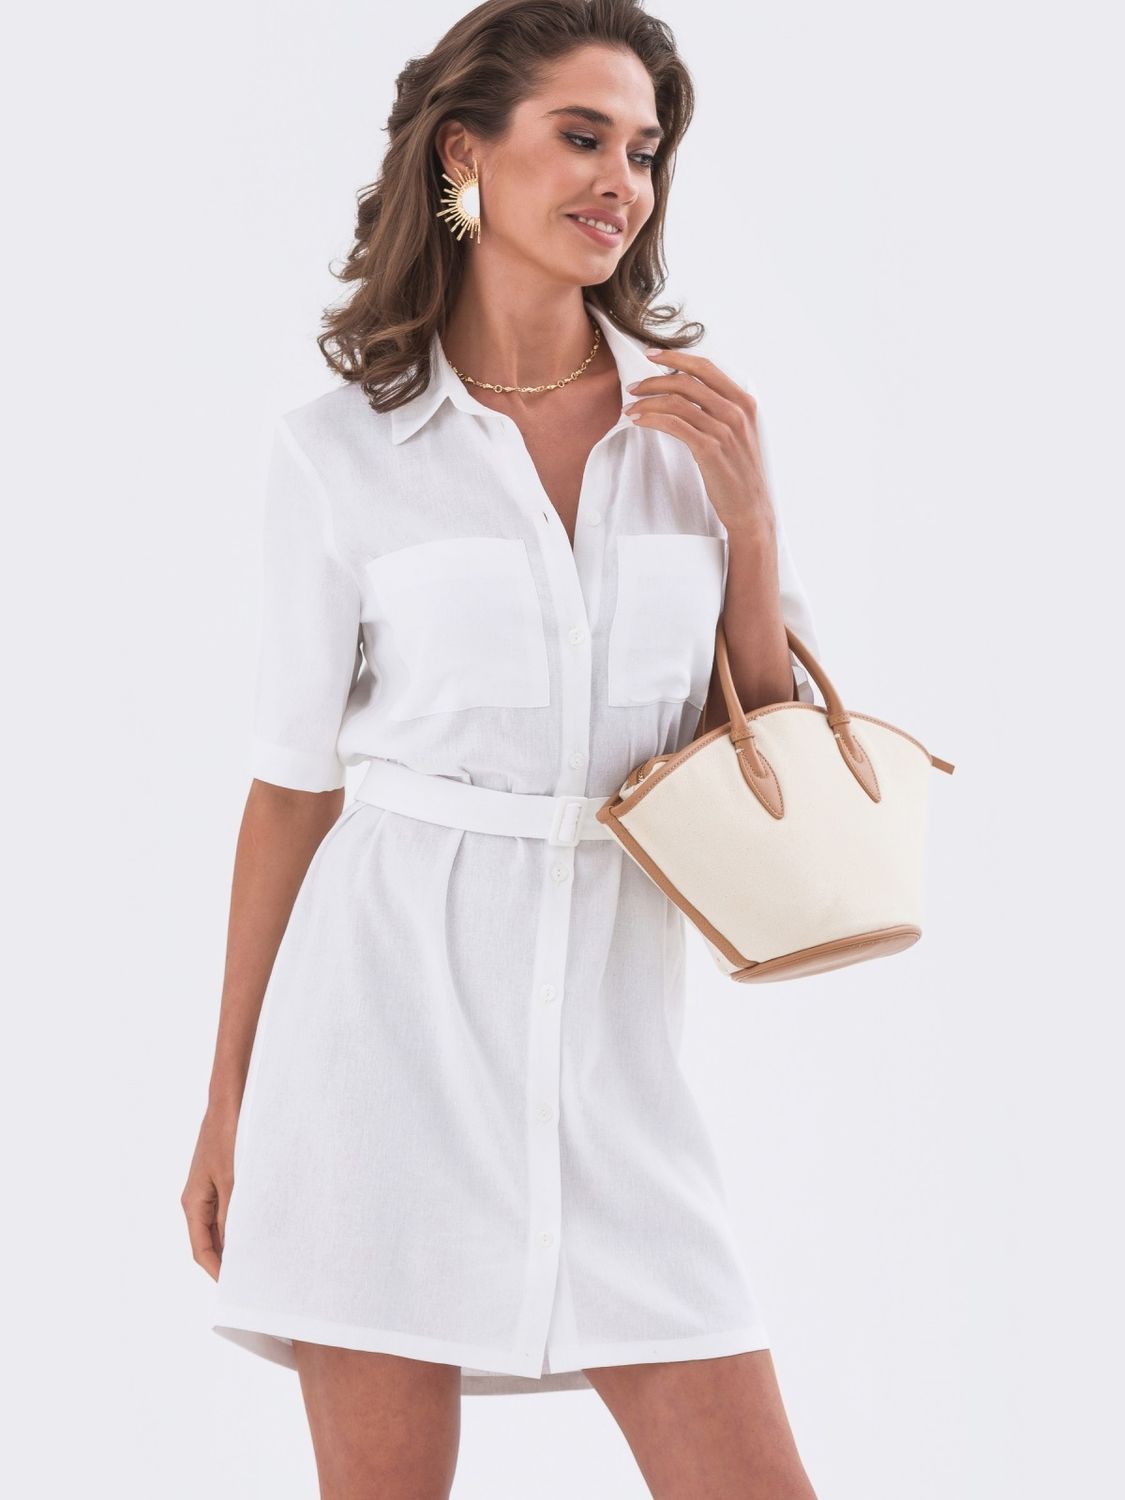 Коротке лляне плаття сорочка білого кольору - фото